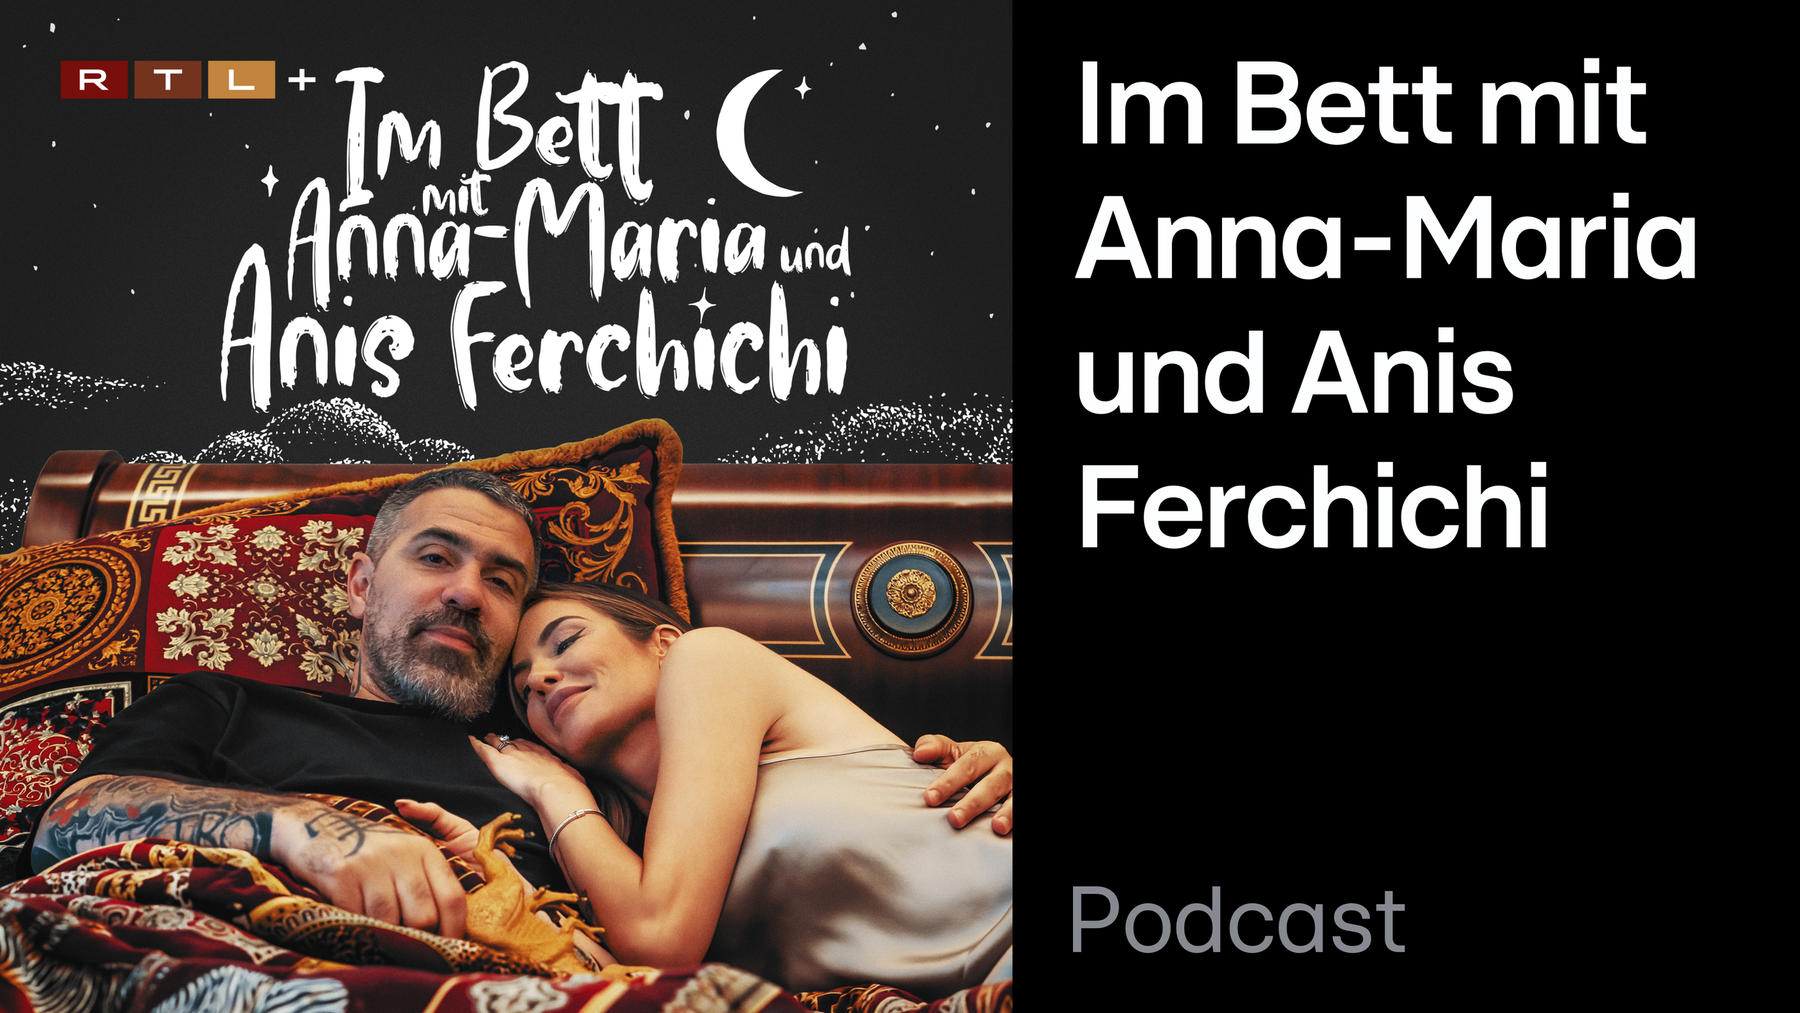 Podcast: Im Bett mit Anna-Maria und Anis Ferchichi